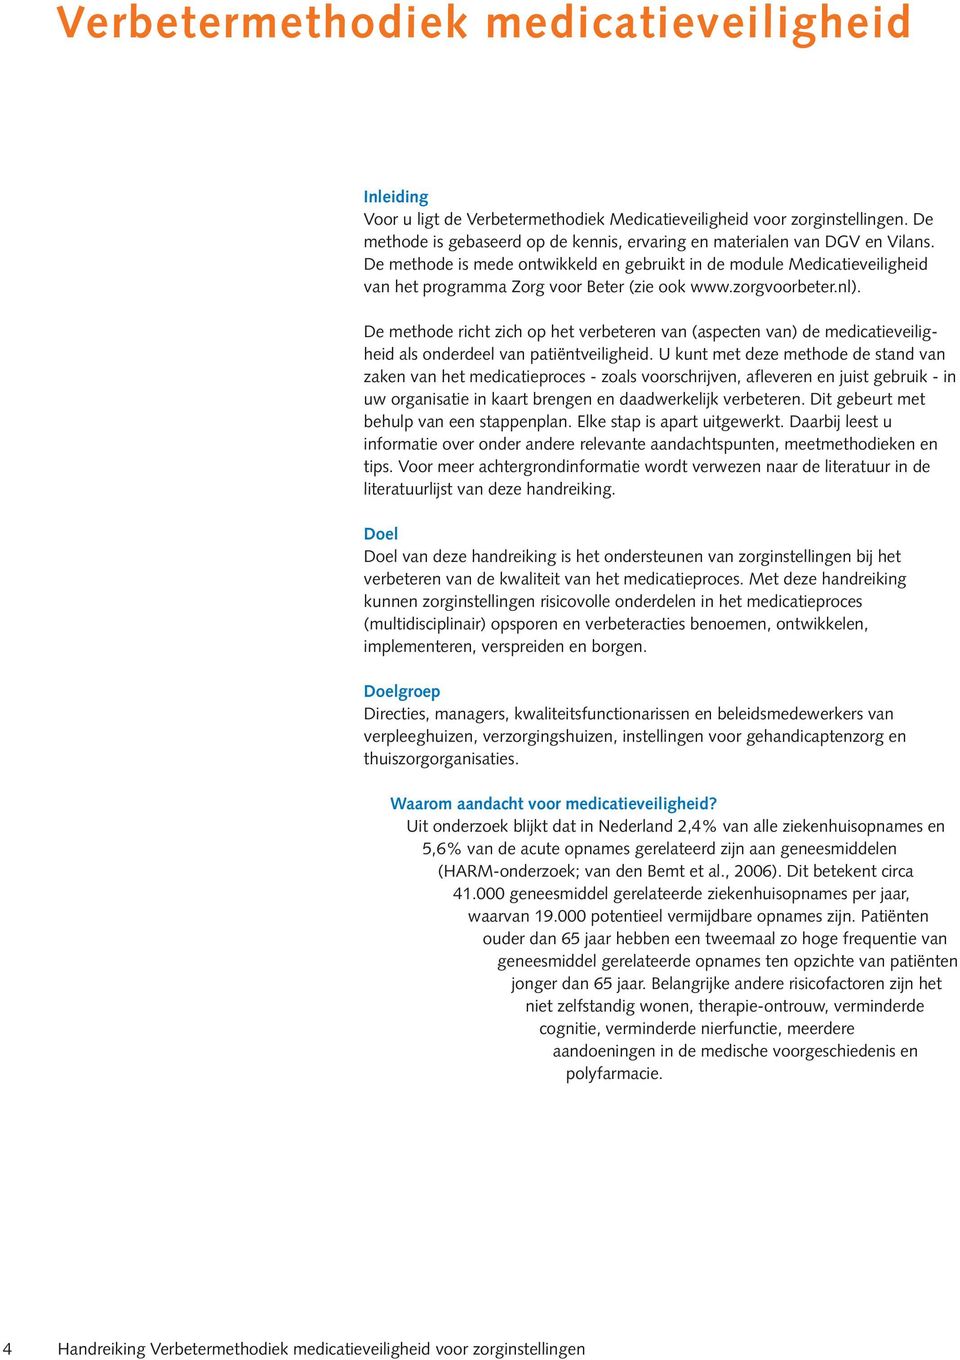 De methode is mede ontwikkeld en gebruikt in de module Medicatieveiligheid van het programma Zorg voor Beter (zie ook www.zorgvoorbeter.nl).